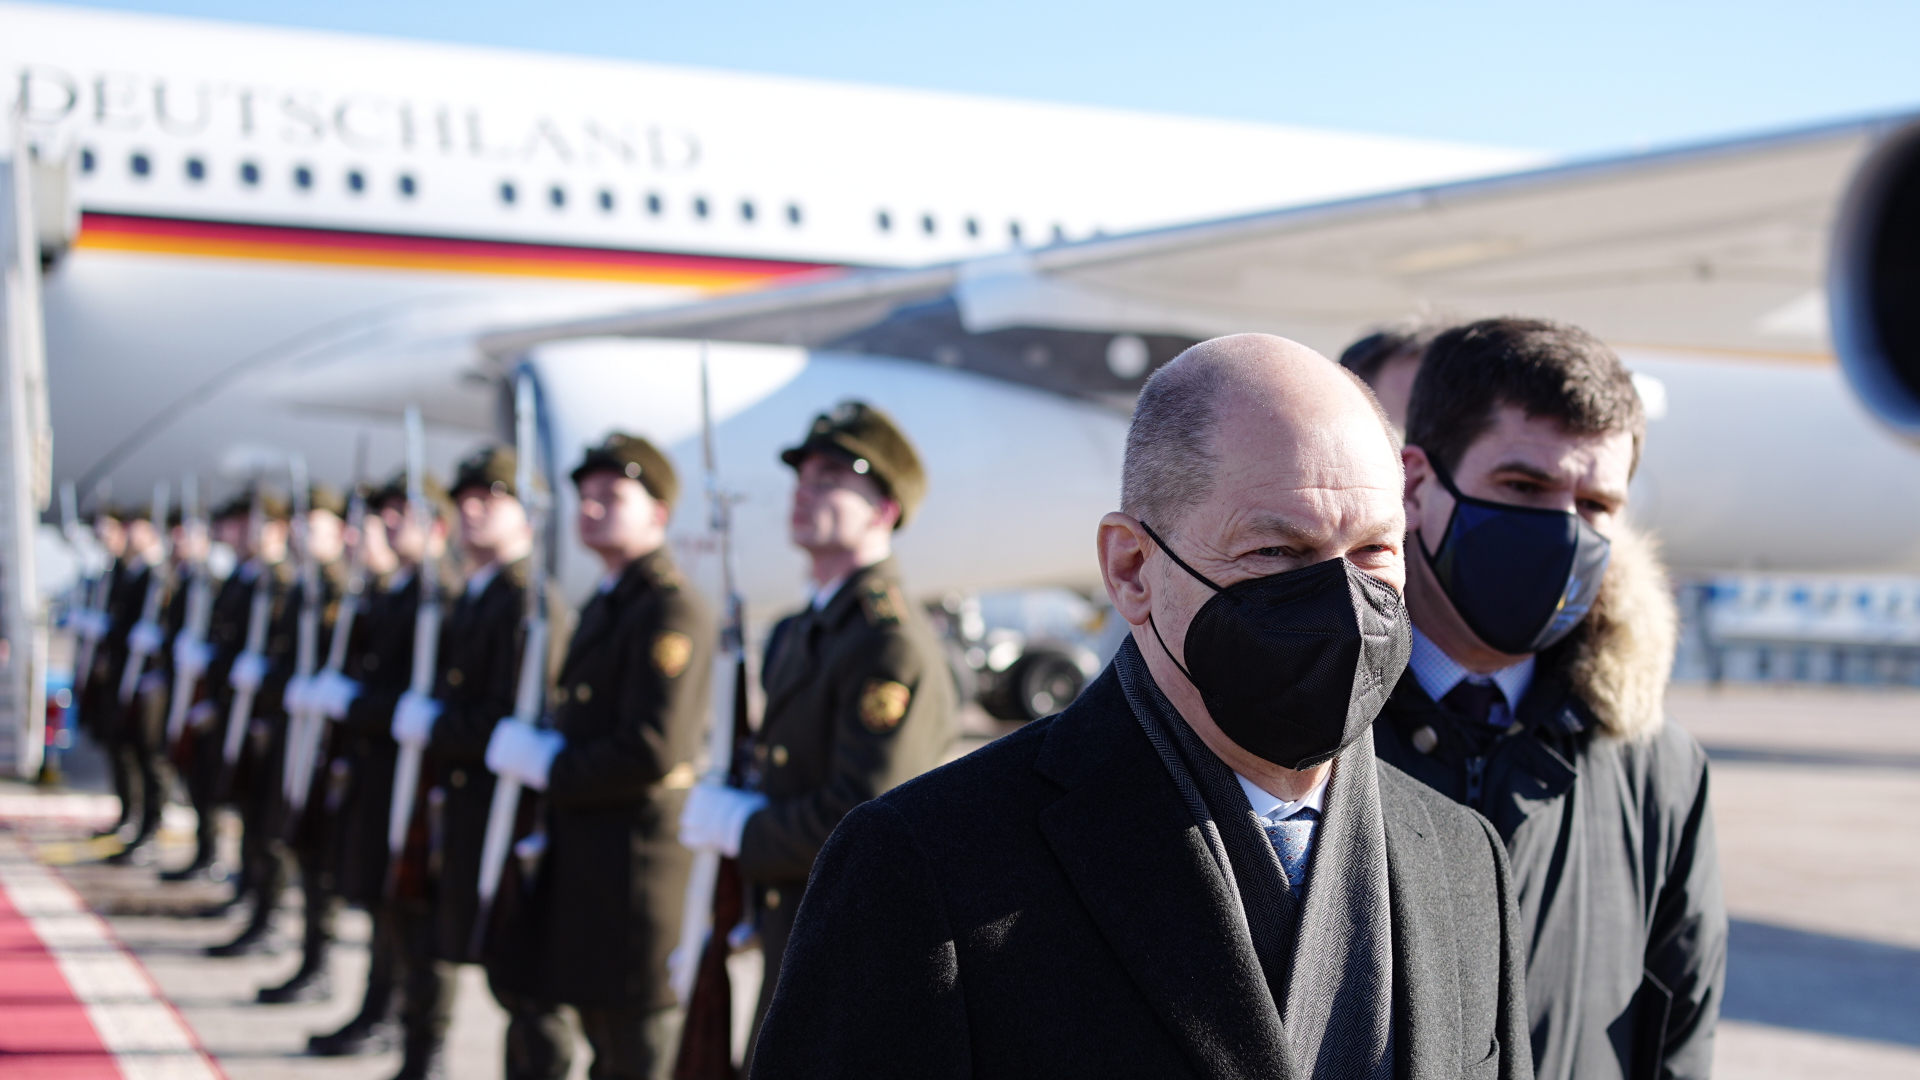 Kanzler Scholz beim Aussteigen aus dem Flugzeug in Kiew | dpa